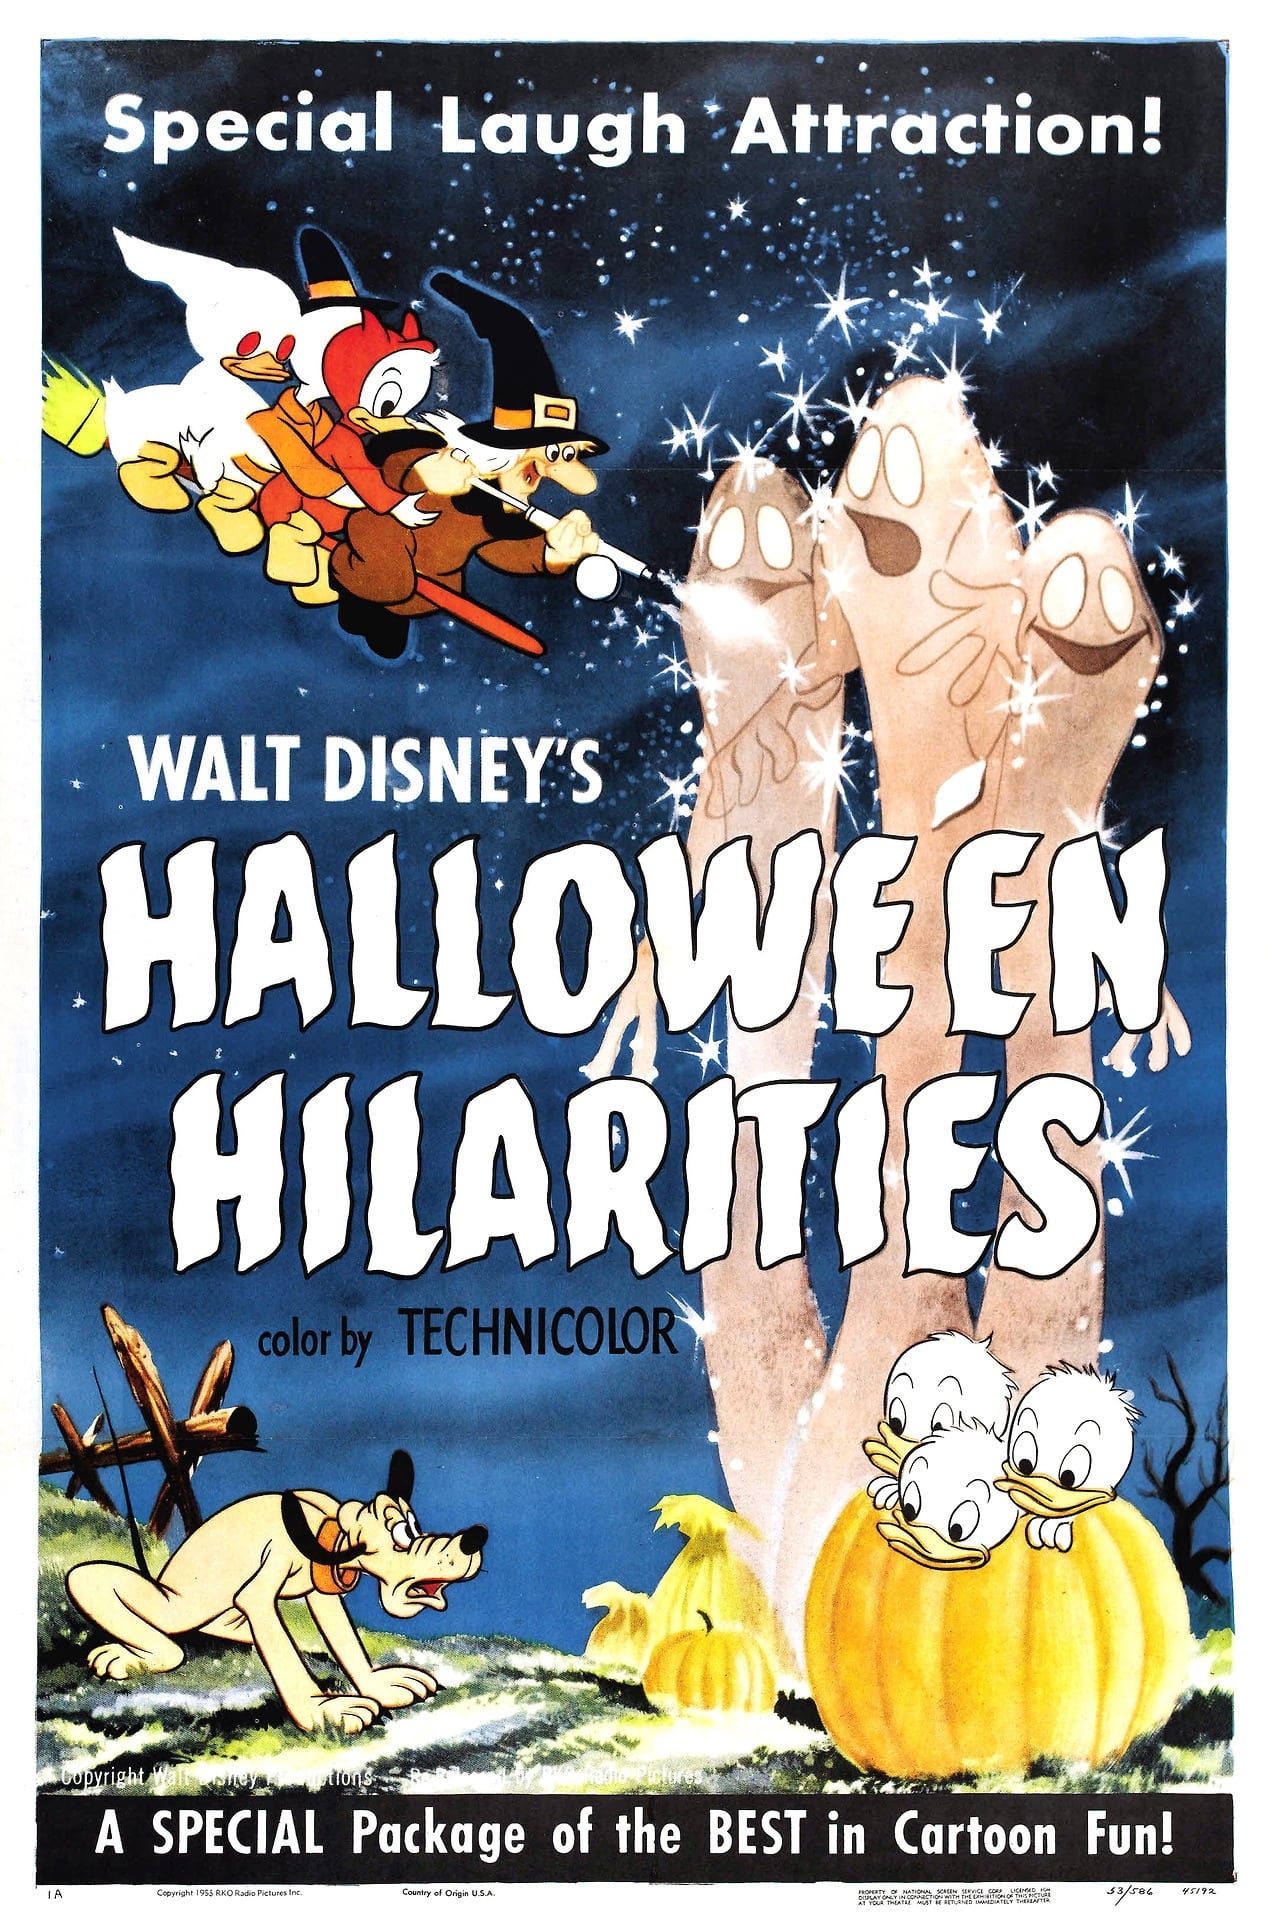 Walt Disney's Halloween Hilarities